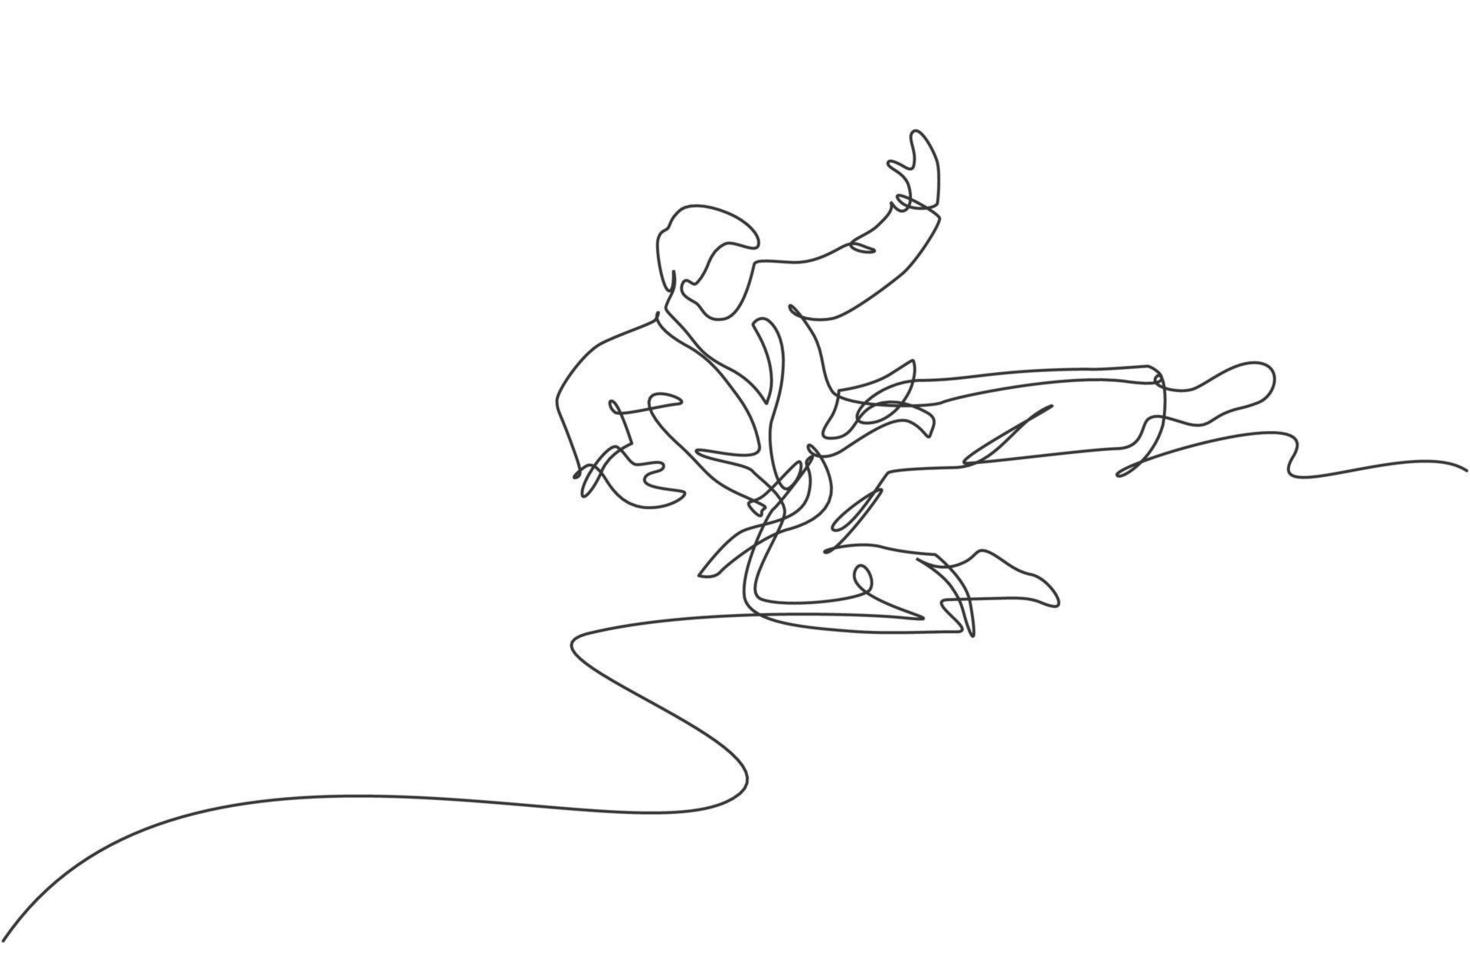 enkele doorlopende lijntekening van jonge zelfverzekerde karateka-man in kimono die karate-gevechten beoefent in dojo. vechtsport sport trainingsconcept. trendy één lijn tekenen ontwerp vector grafische afbeelding